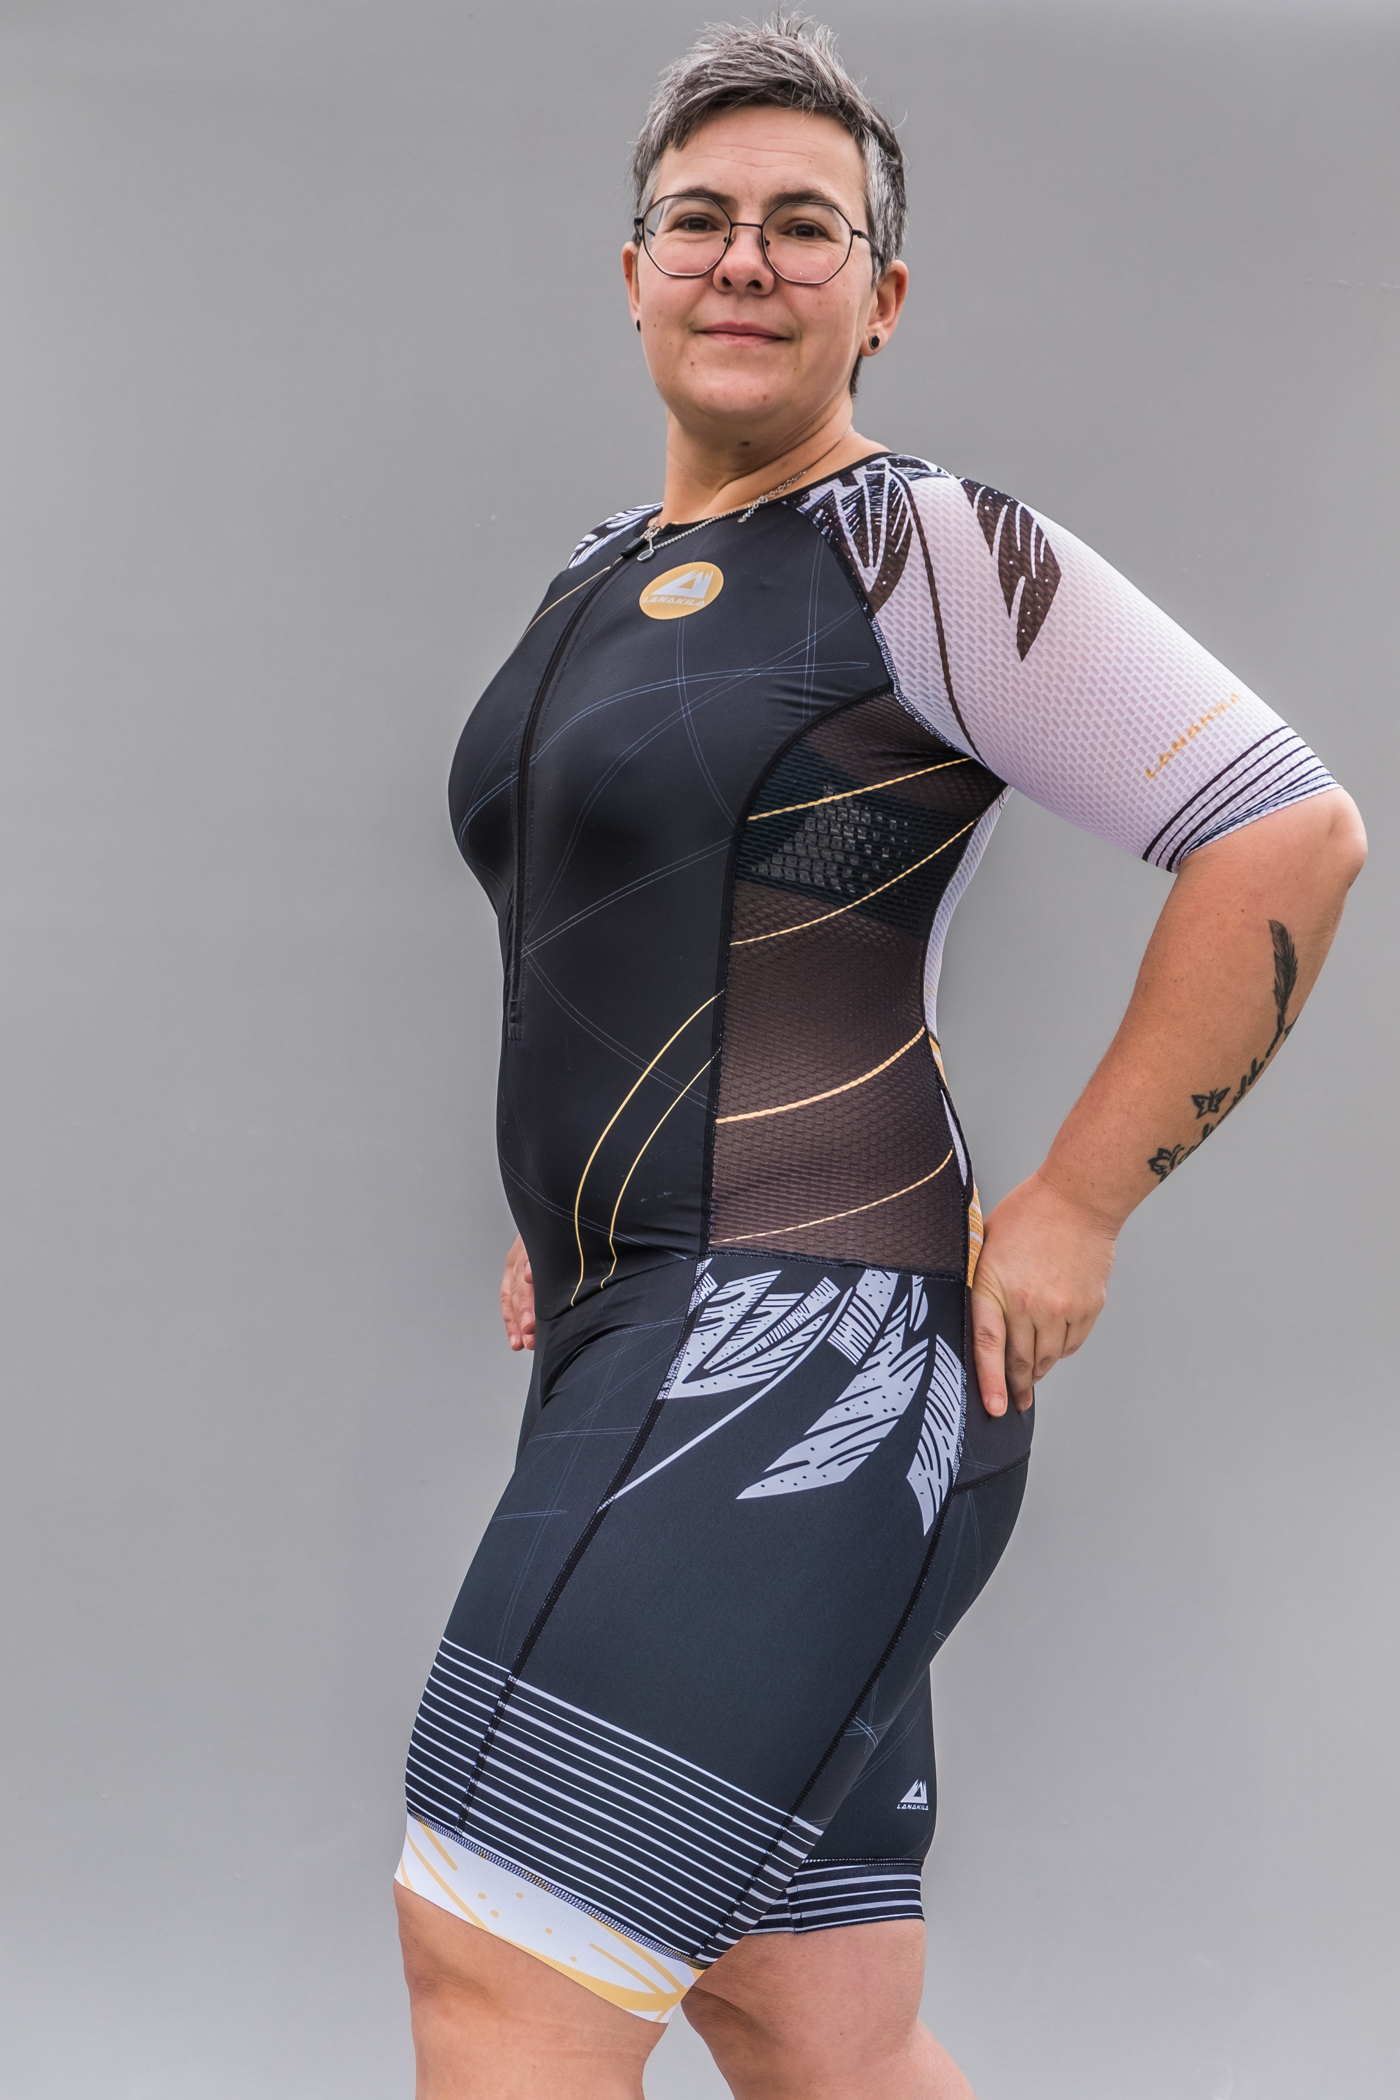 LANAKILA Frauen Triathlon Anzug – Fly Gold side